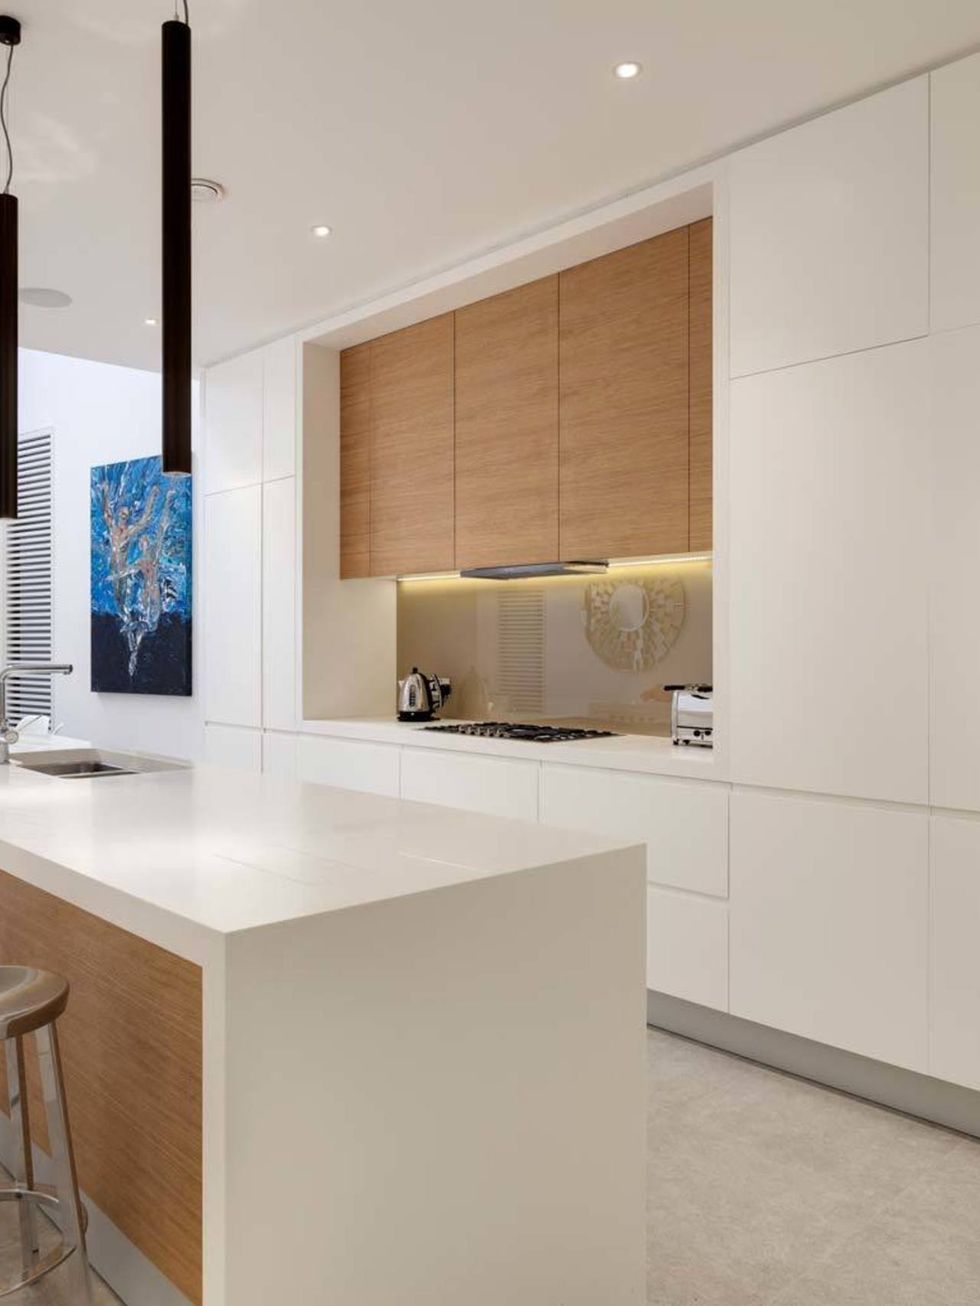 <p>La cocina, amplia y en color blanco, muestra la doble altura de la cocina-comedor. Este espacio tan puro y luminoso se abre a un patio trasero de nueva creación.</p>